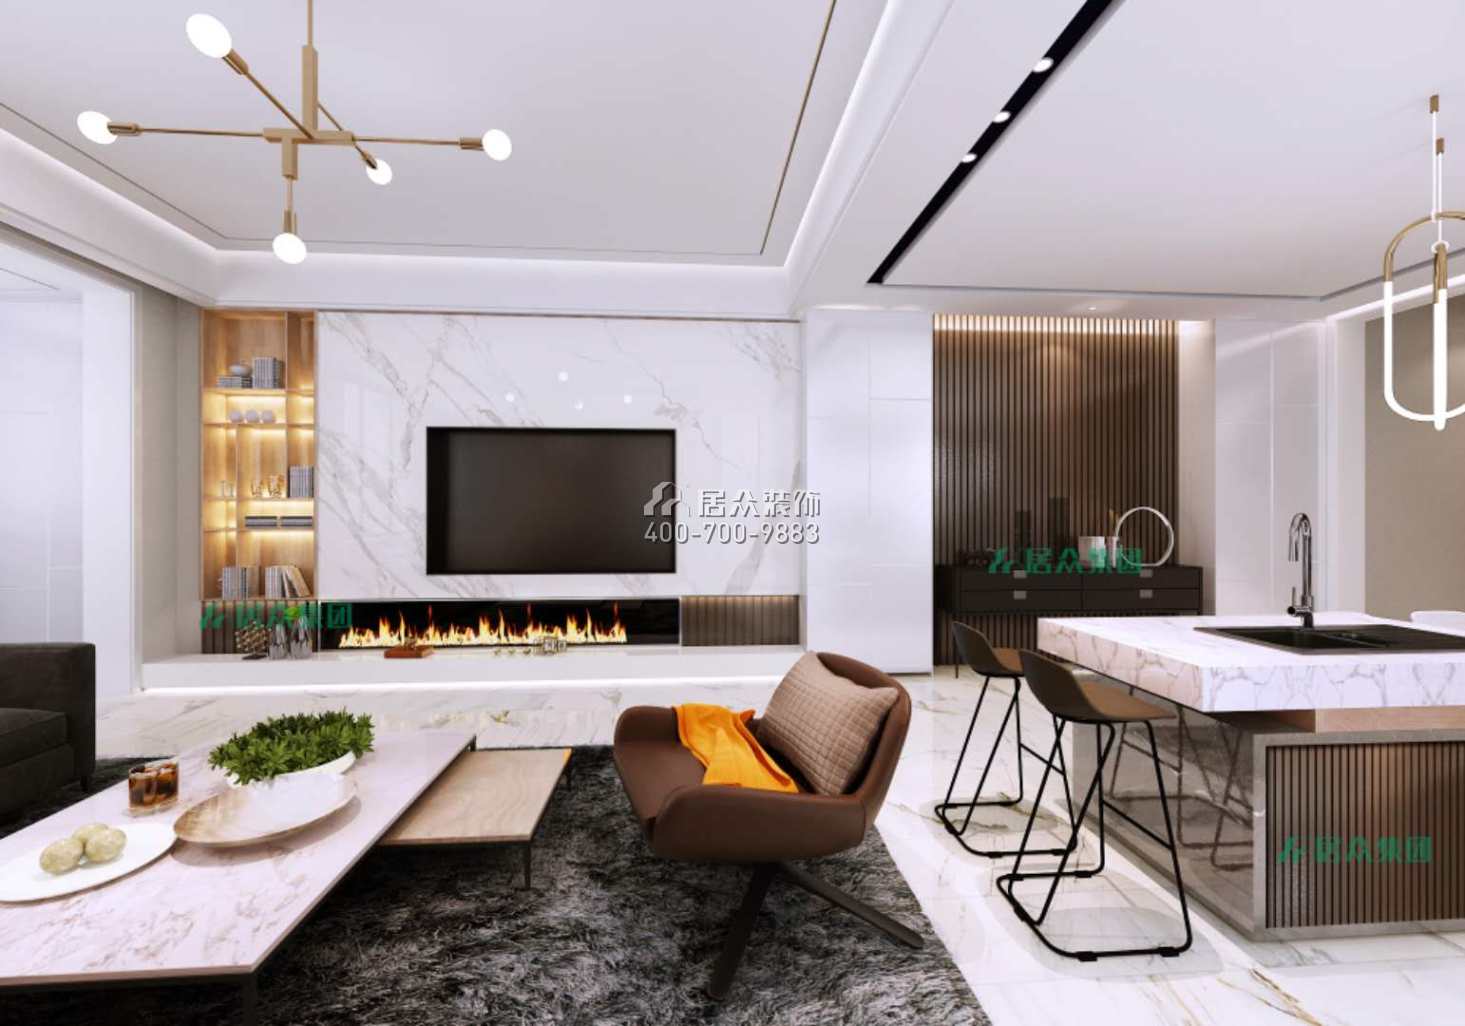 保利中央公園430平方米現代簡約風格別墅戶型客餐廳一體裝修效果圖